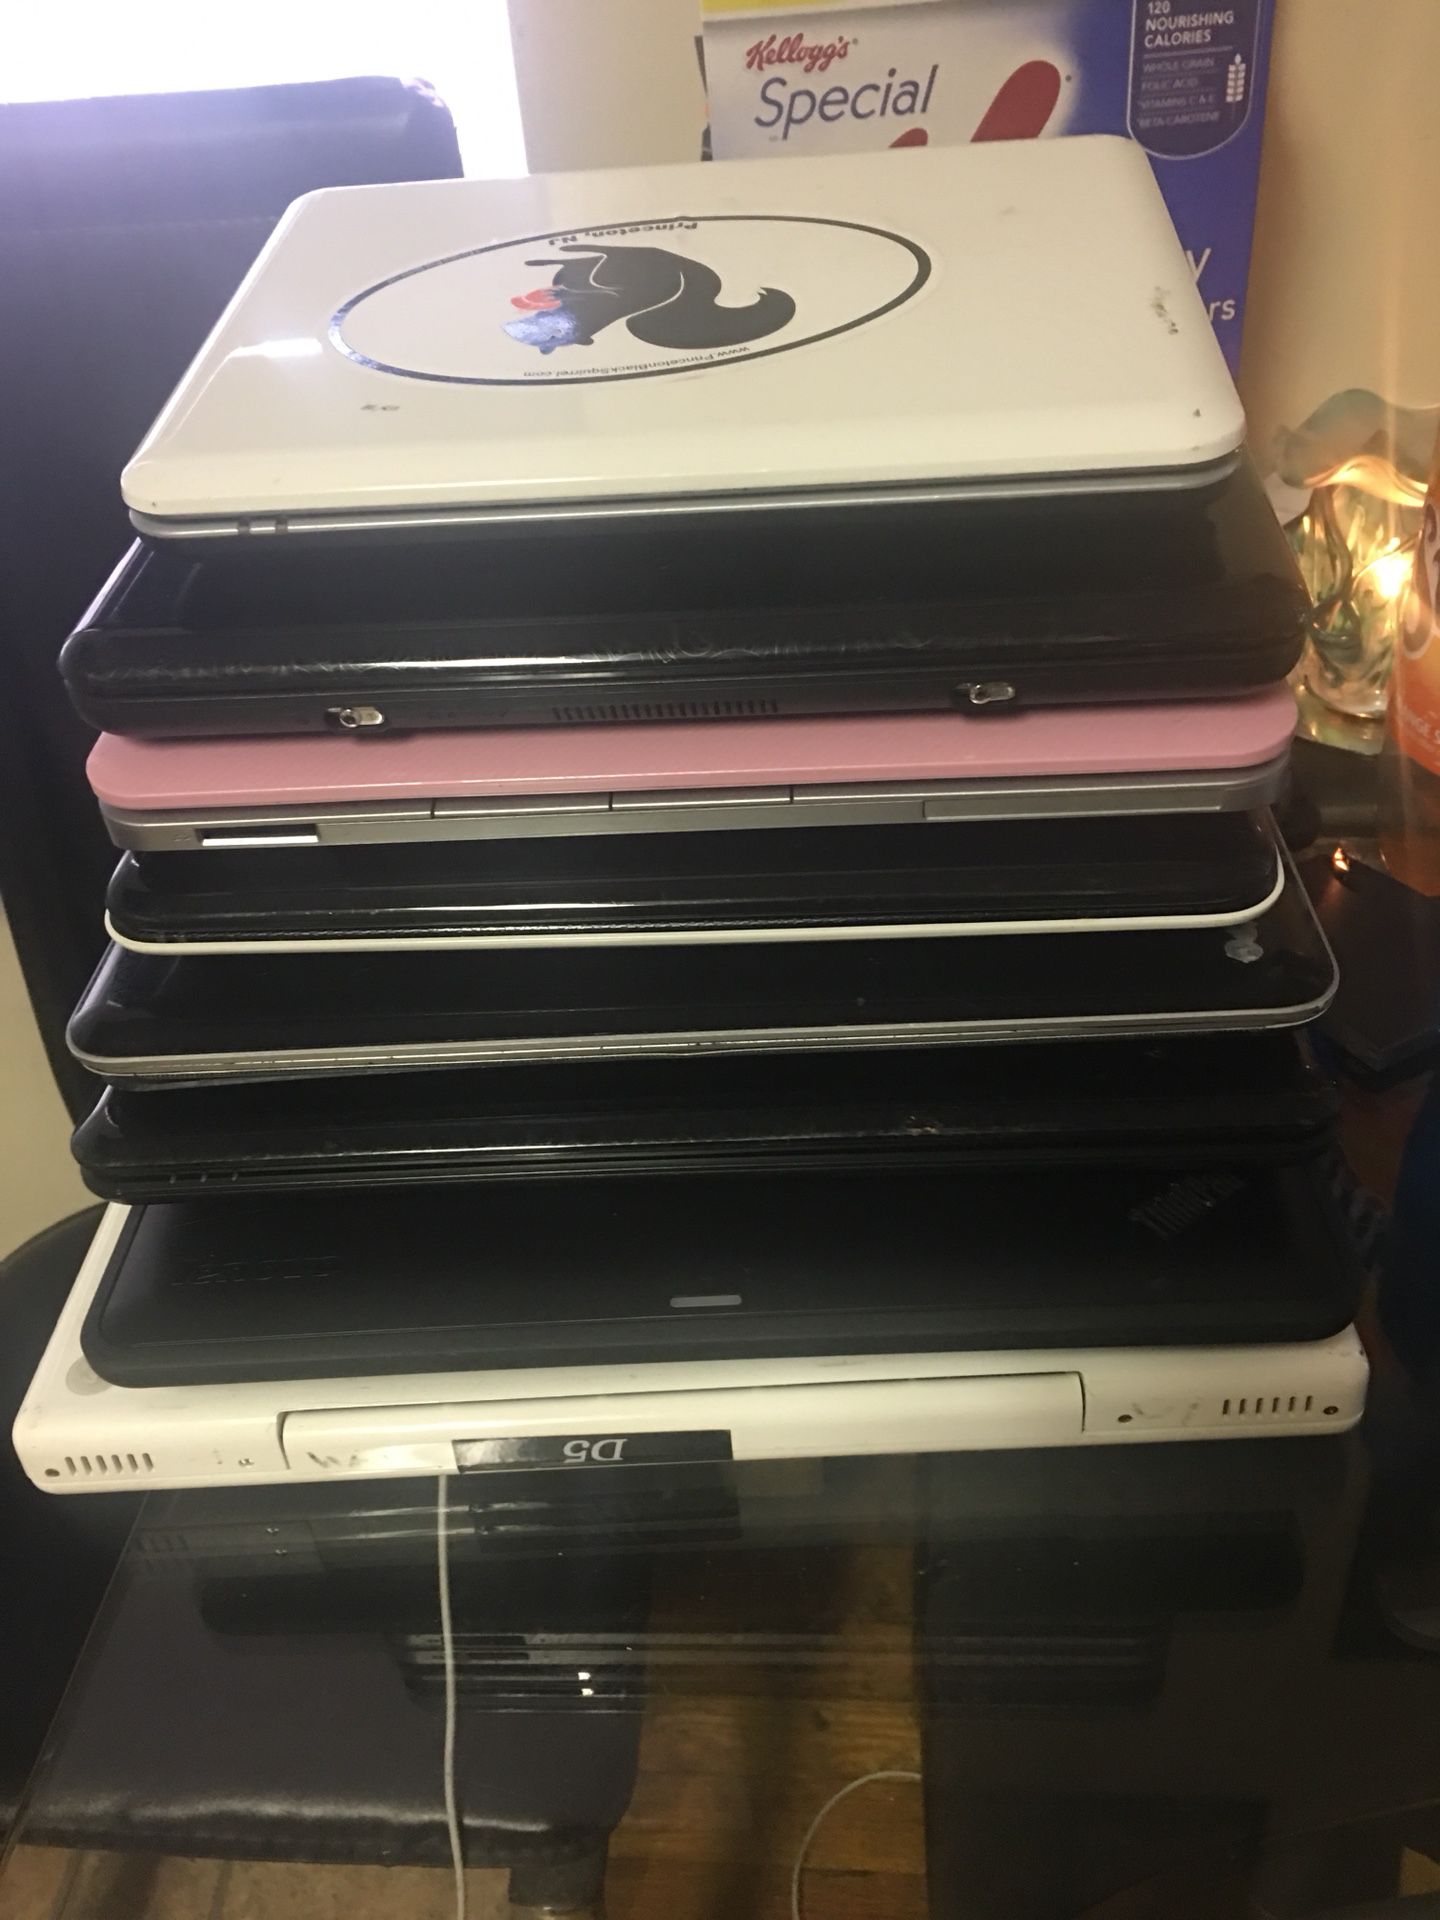 Mini laptops